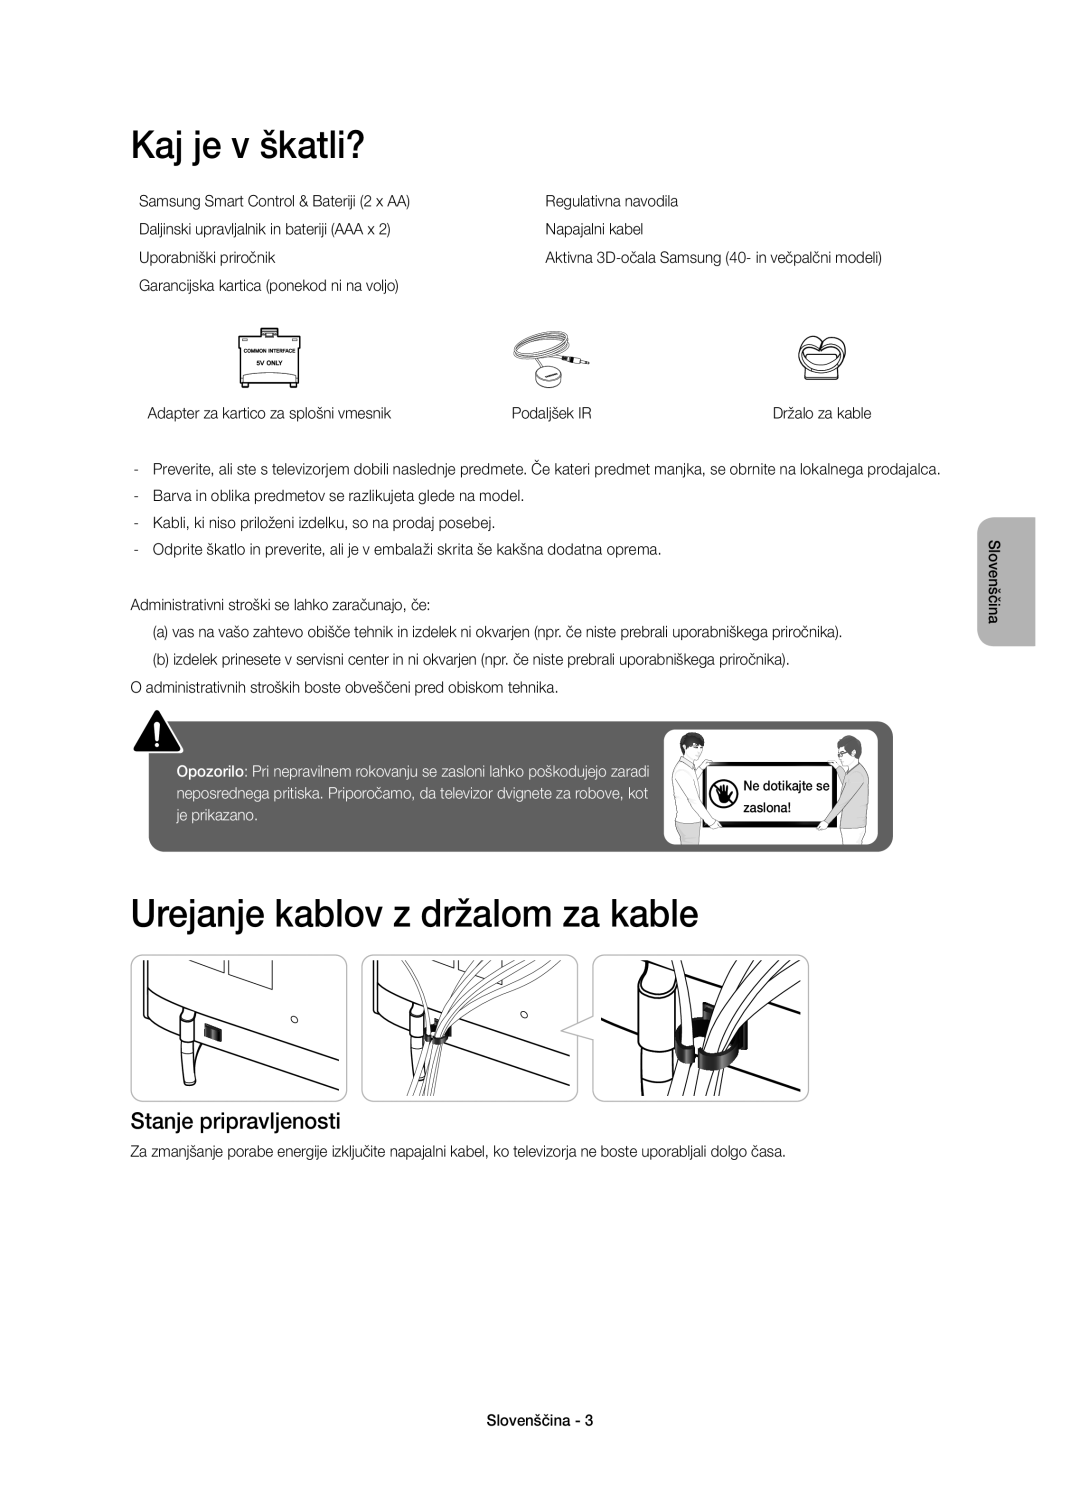 Samsung UE55H6410SSXZG manual Kaj je v škatli?, Urejanje kablov z držalom za kable, Stanje pripravljenosti, je prikazano 